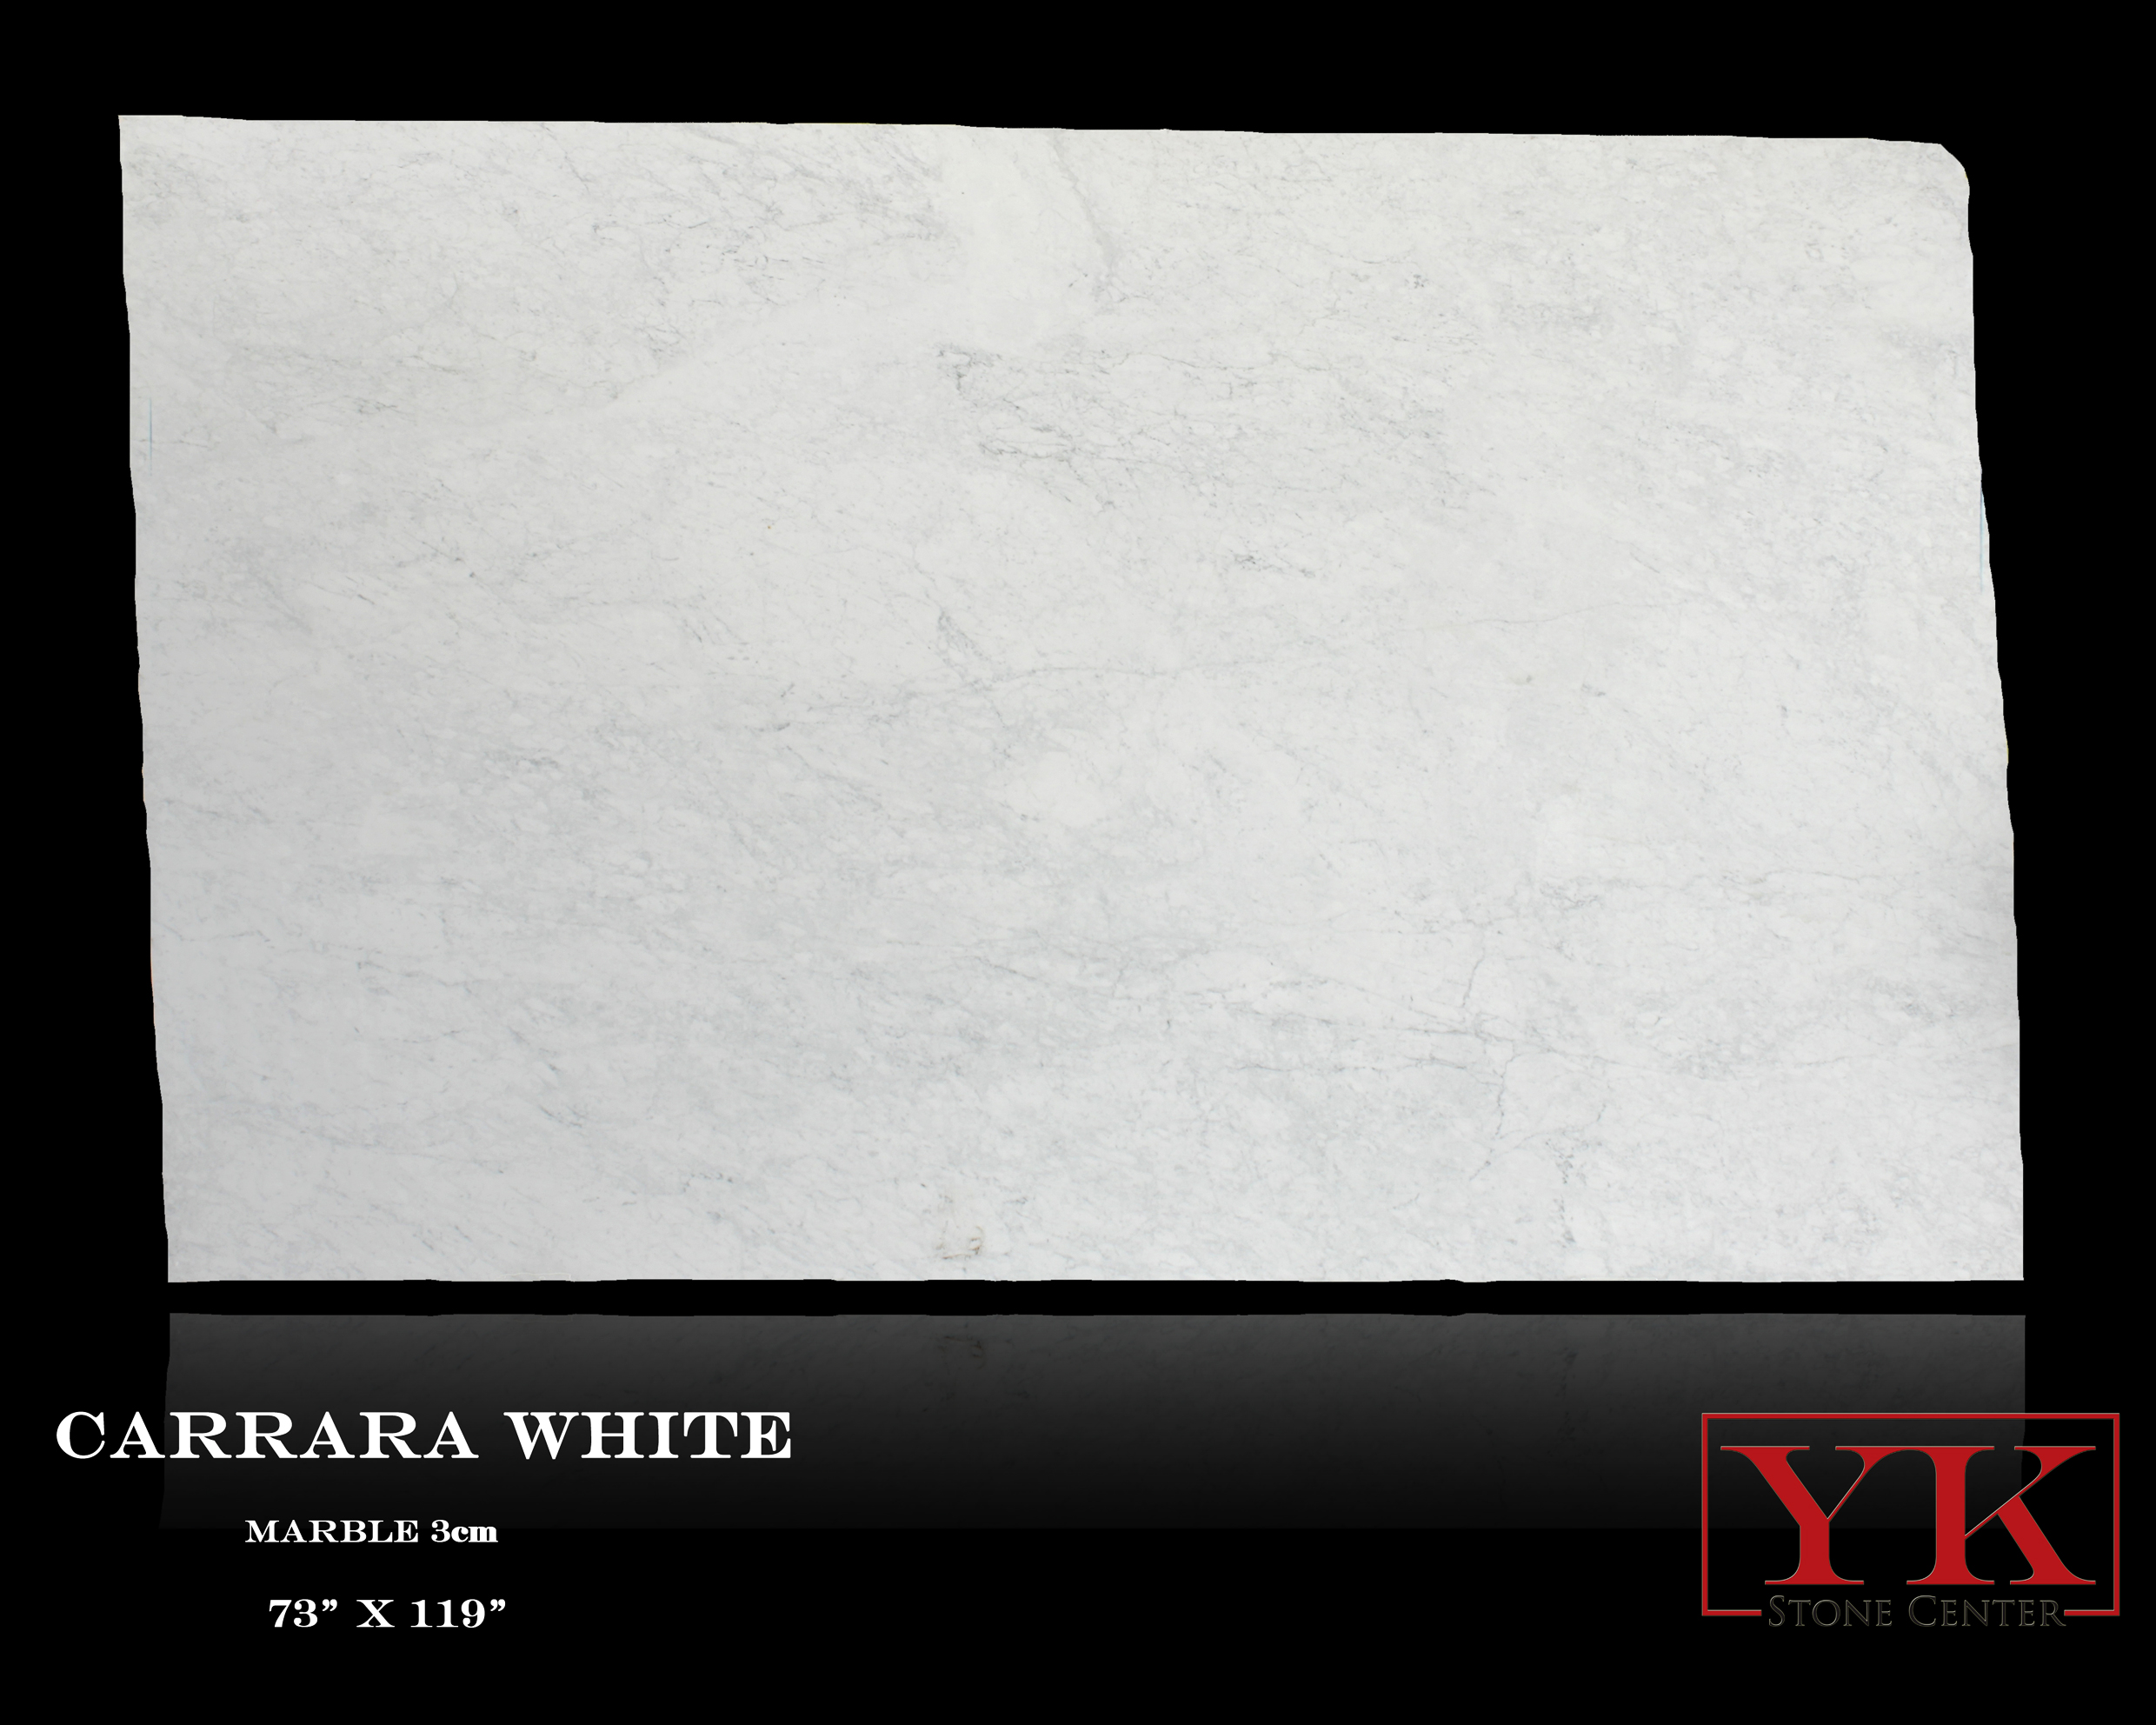 Carrara White Marble slabs denver, yk stone center showroom, natural stone slabs